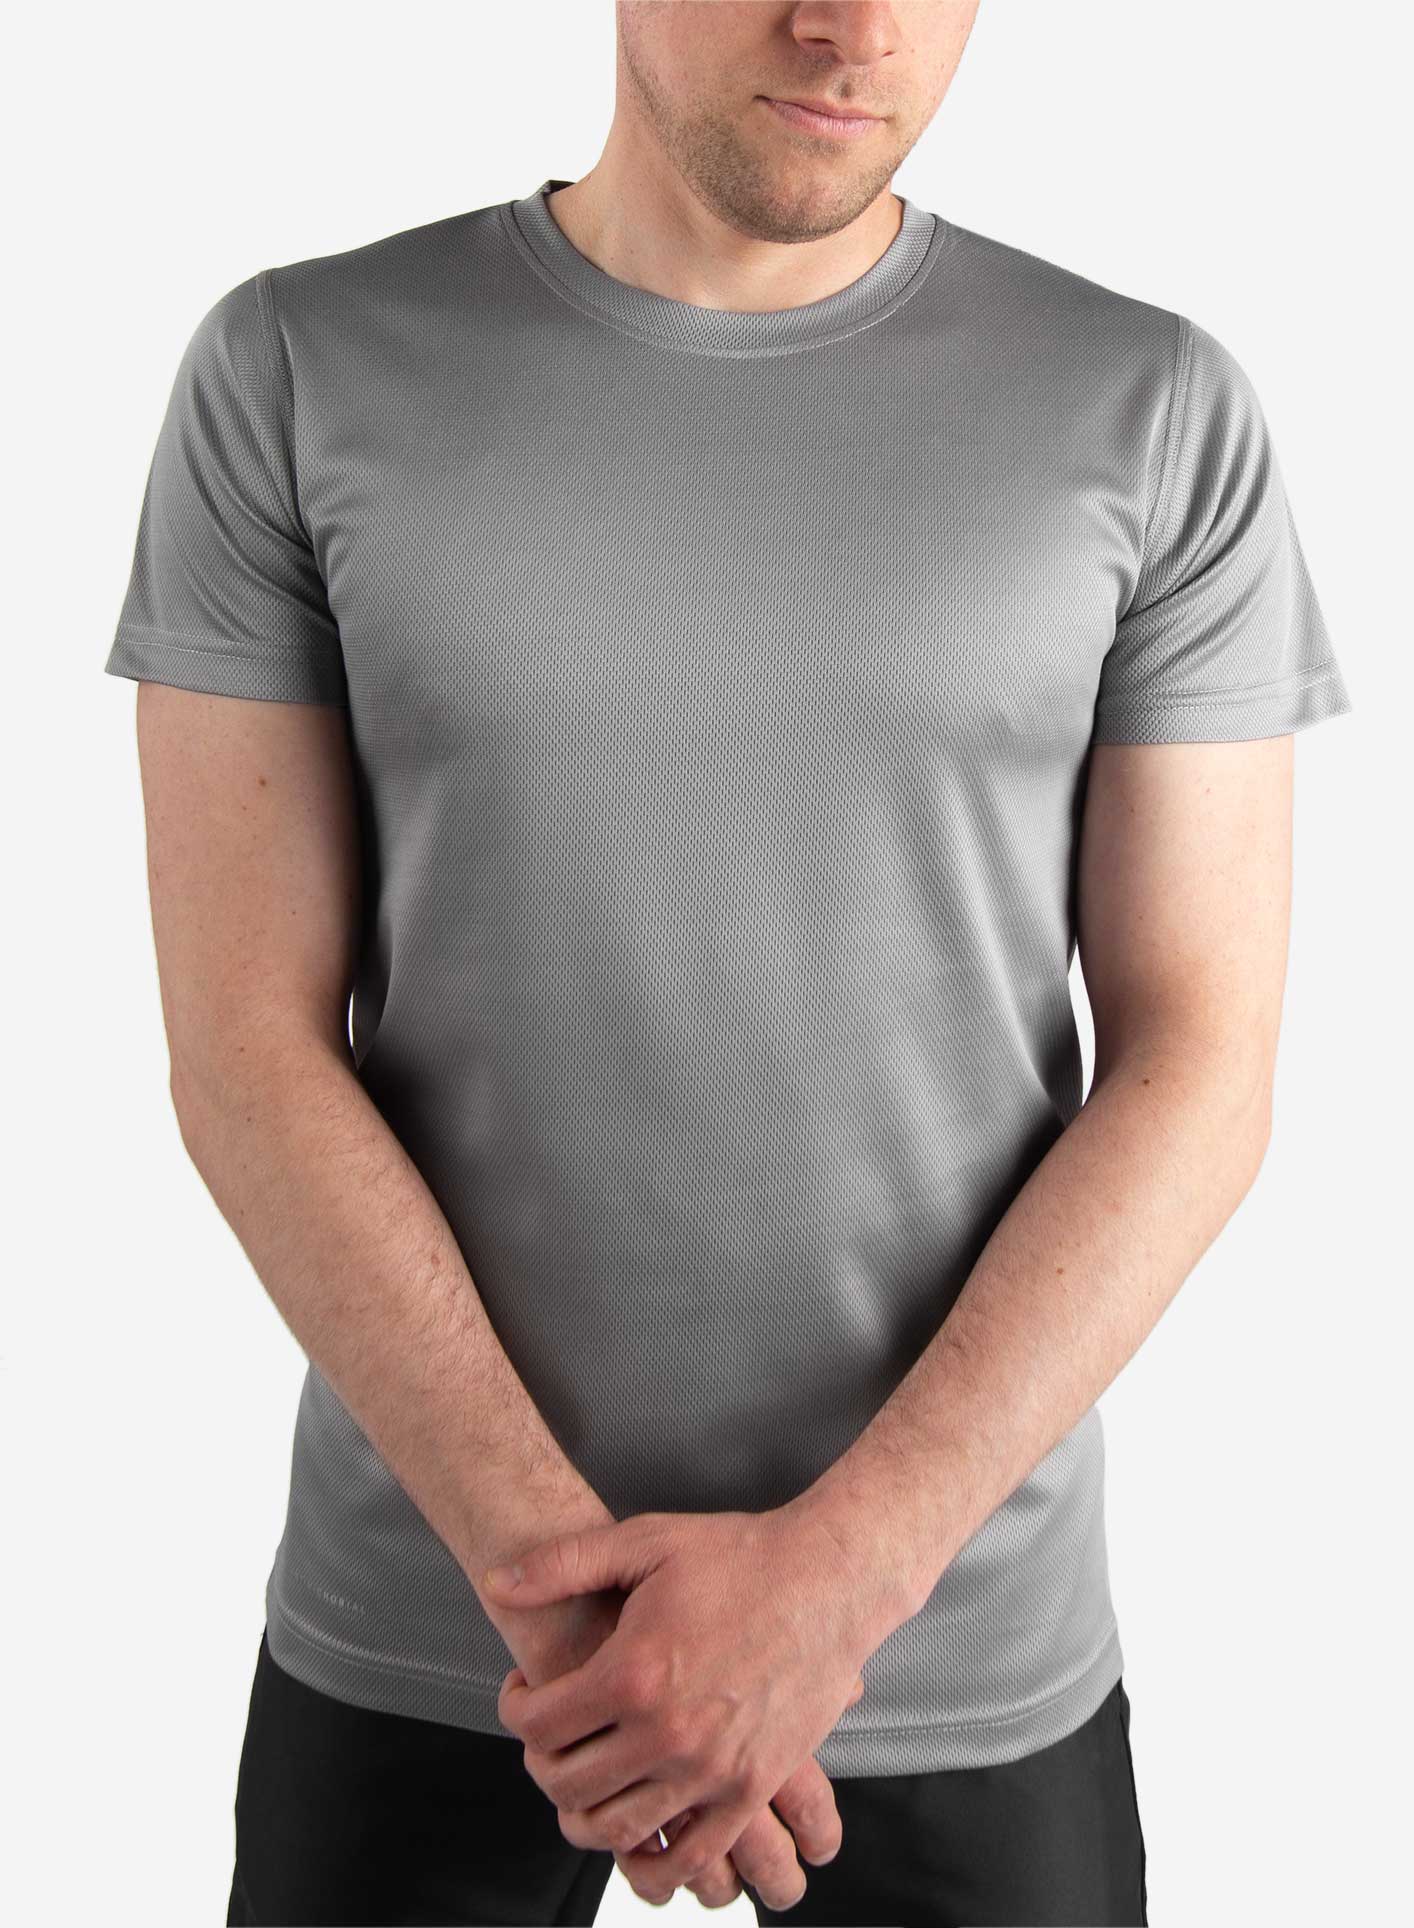 Men's gray short sleeve underscrub gray